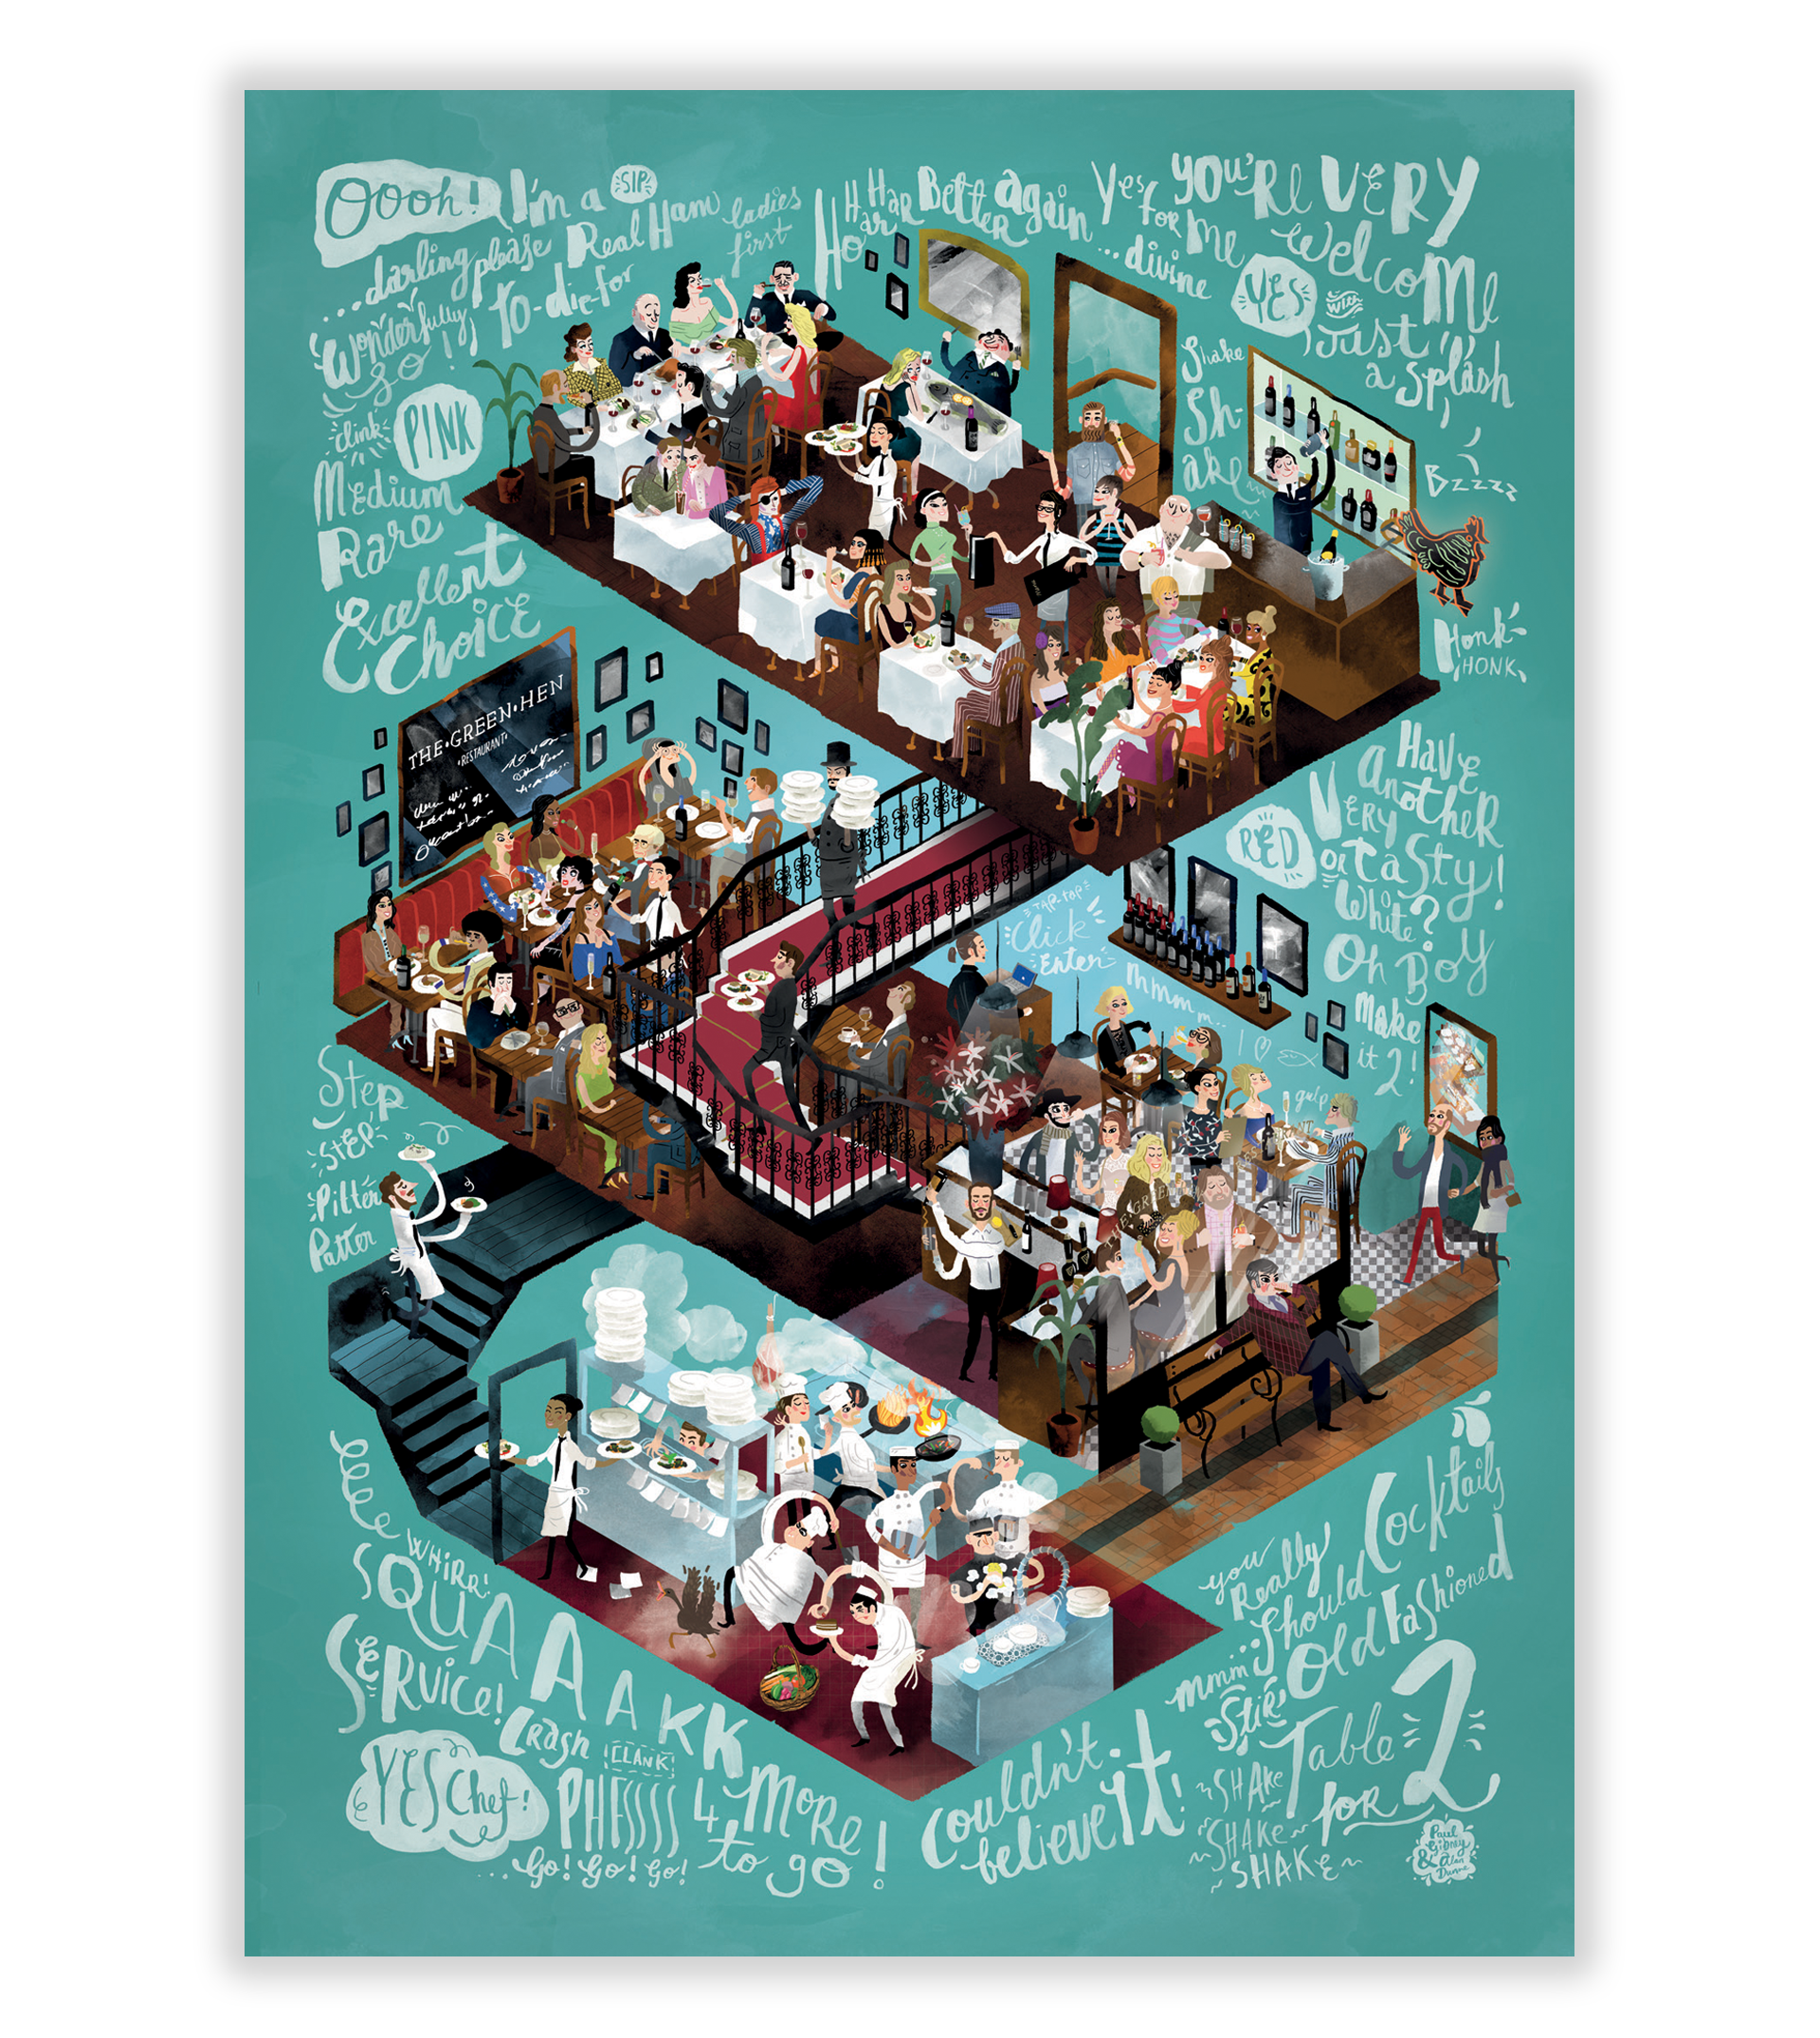 Cover image: The Green Hen Restaurant | Illustration